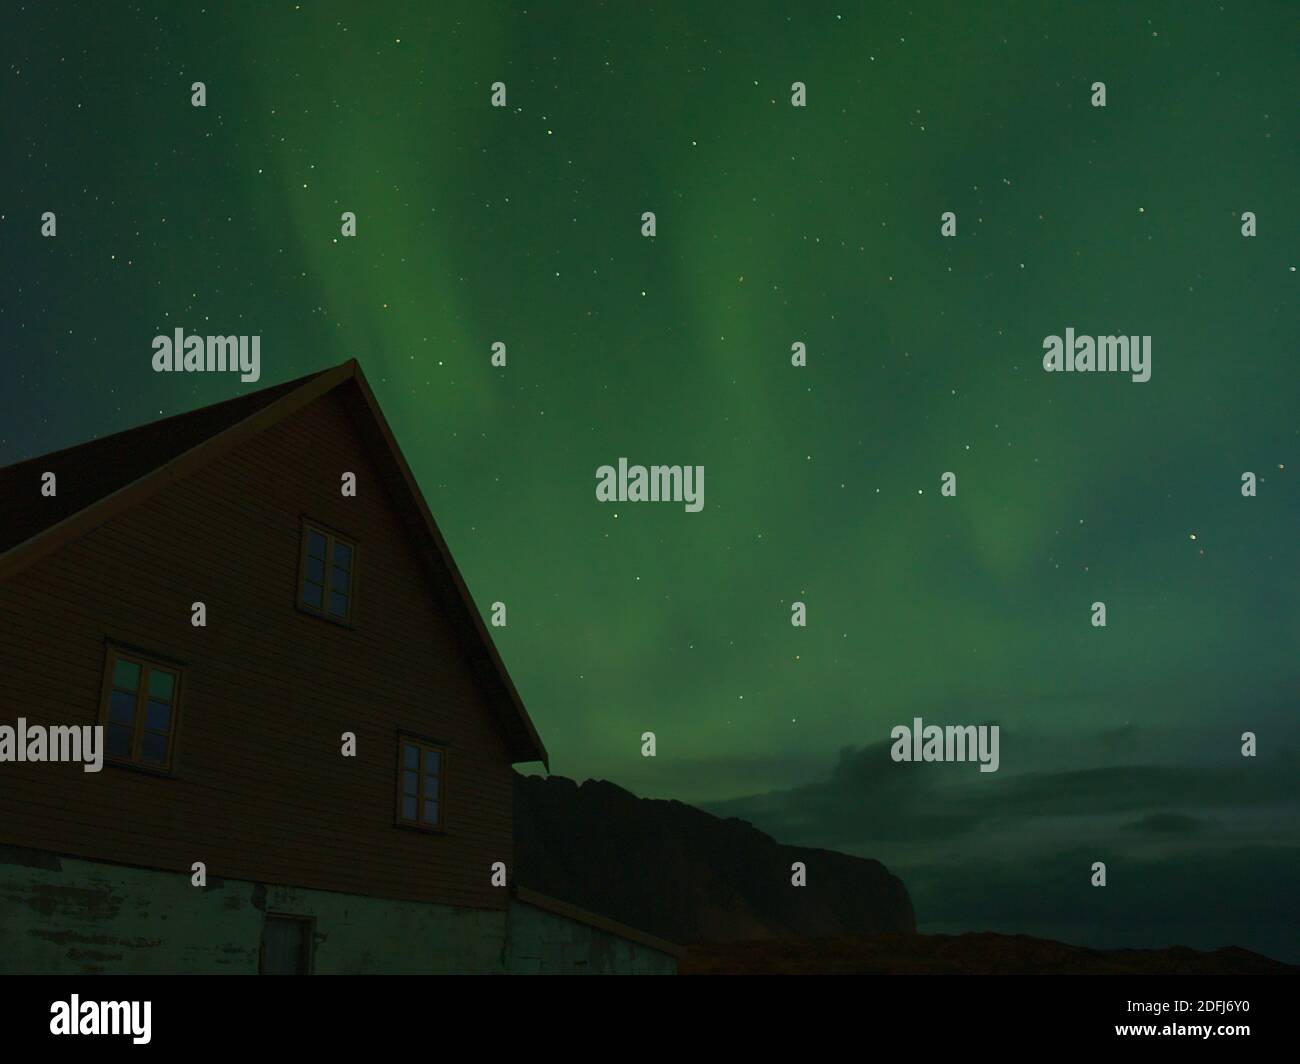 Belle vue du ciel nocturne avec des lumières polaires brillantes (aurora borealis) de couleur verte au-dessus de la vieille maison et silhouettes de montagnes en Norvège. Banque D'Images